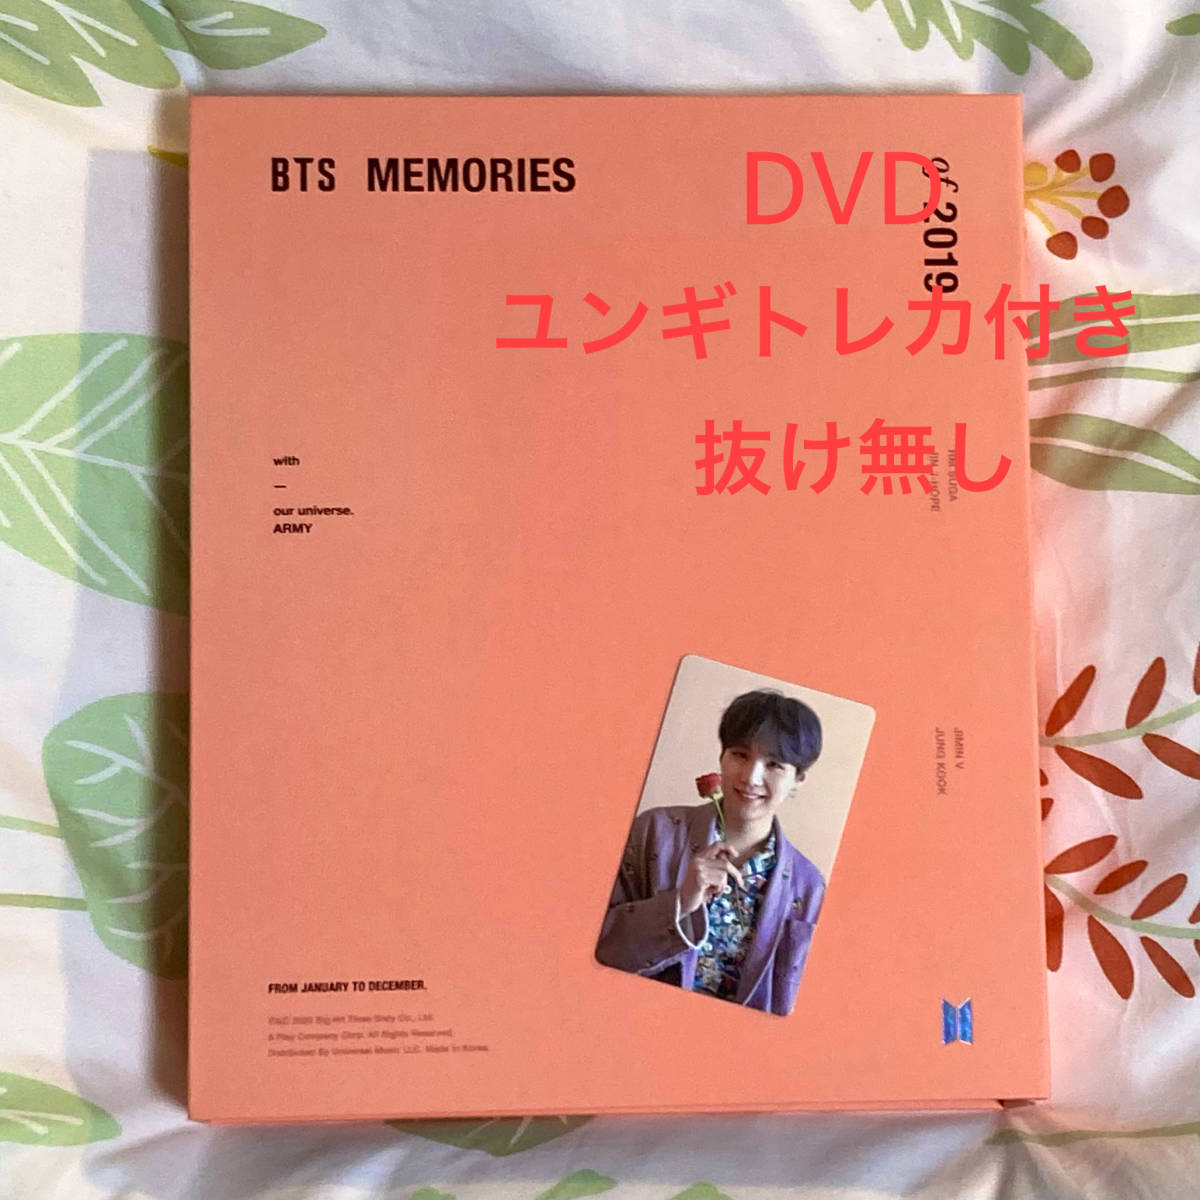 ★★ BTS MEMORIES 2019 DVD未再生 日本語字幕付き トレカ付き ユンギ ★★